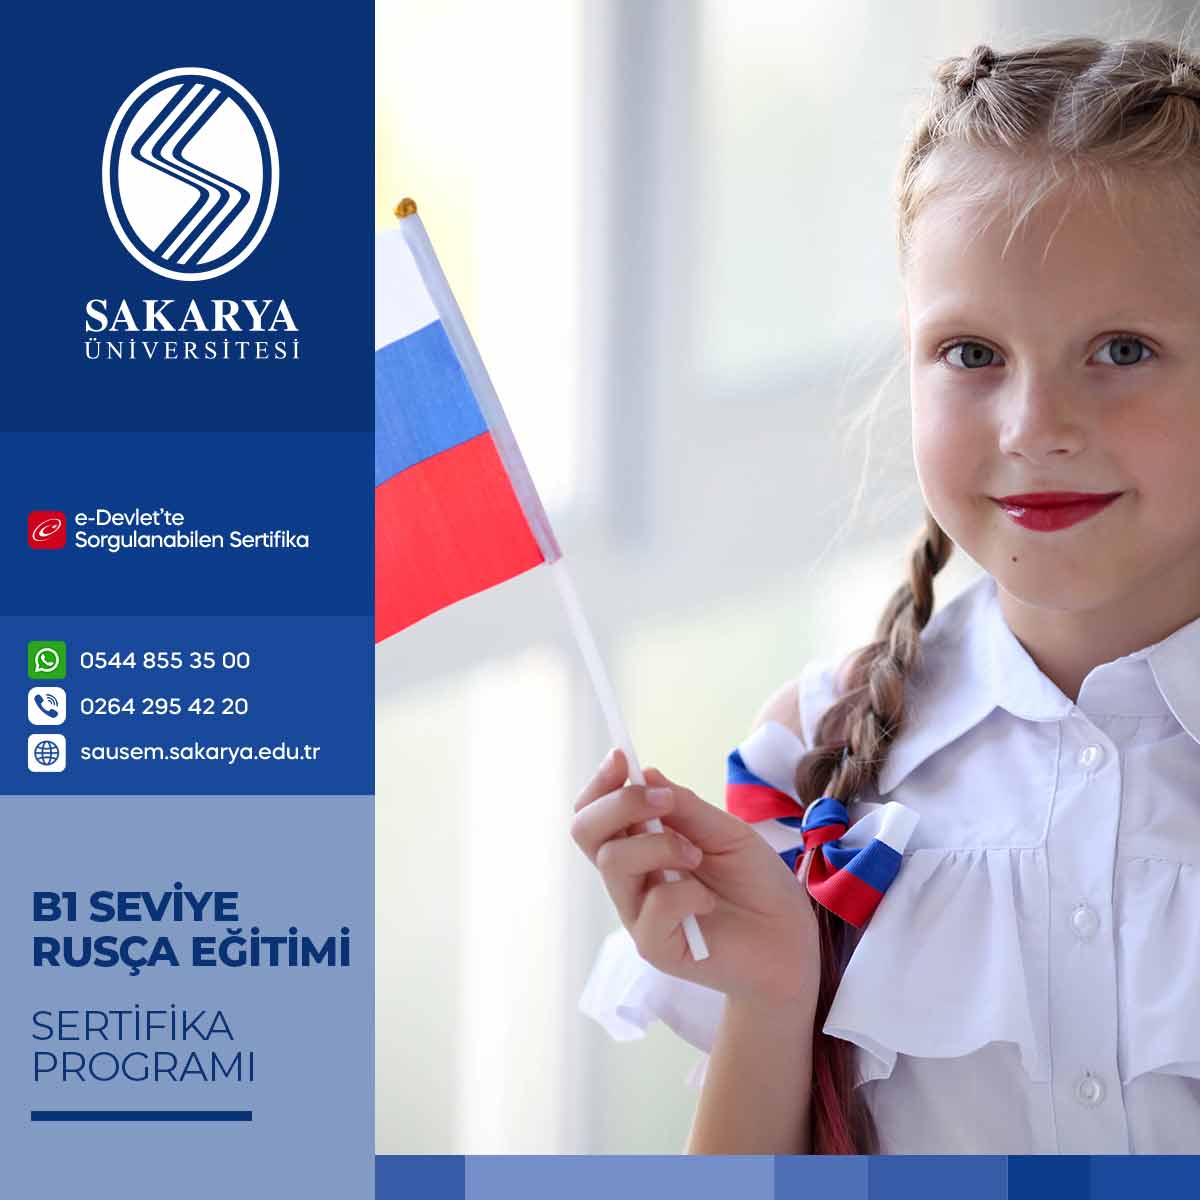 B1 Seviye Rusça Eğitimi Sertifika Programı